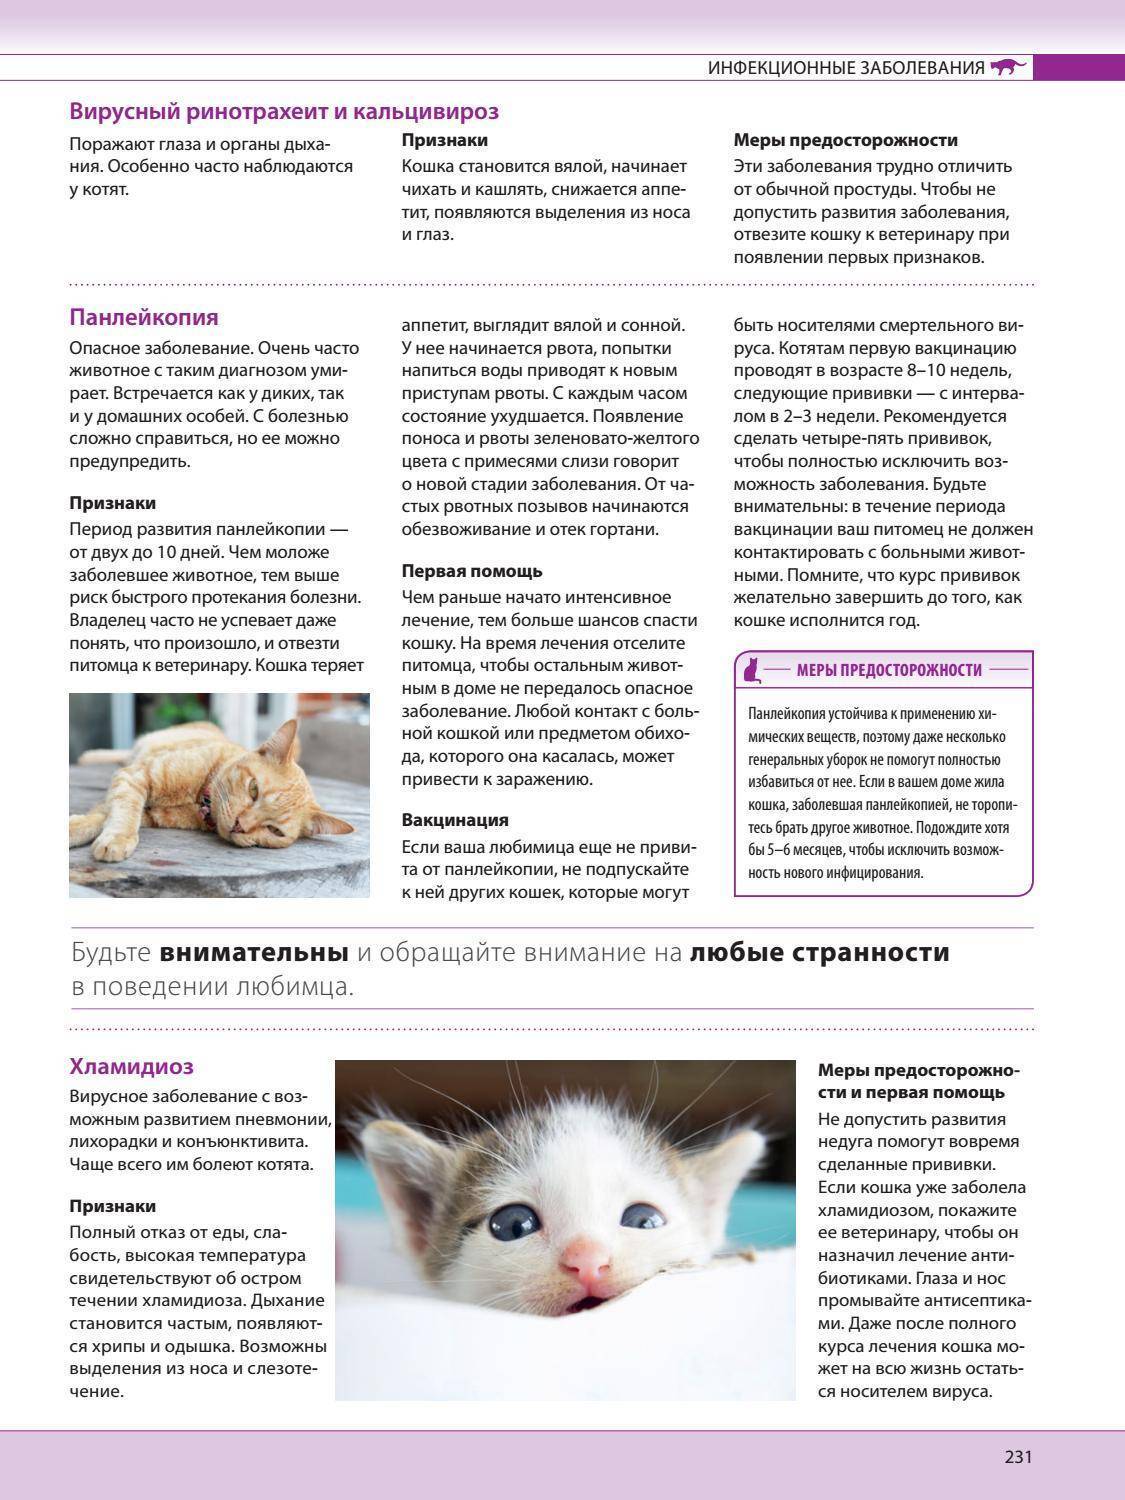 Беспокойство у кошки: причины и признаки